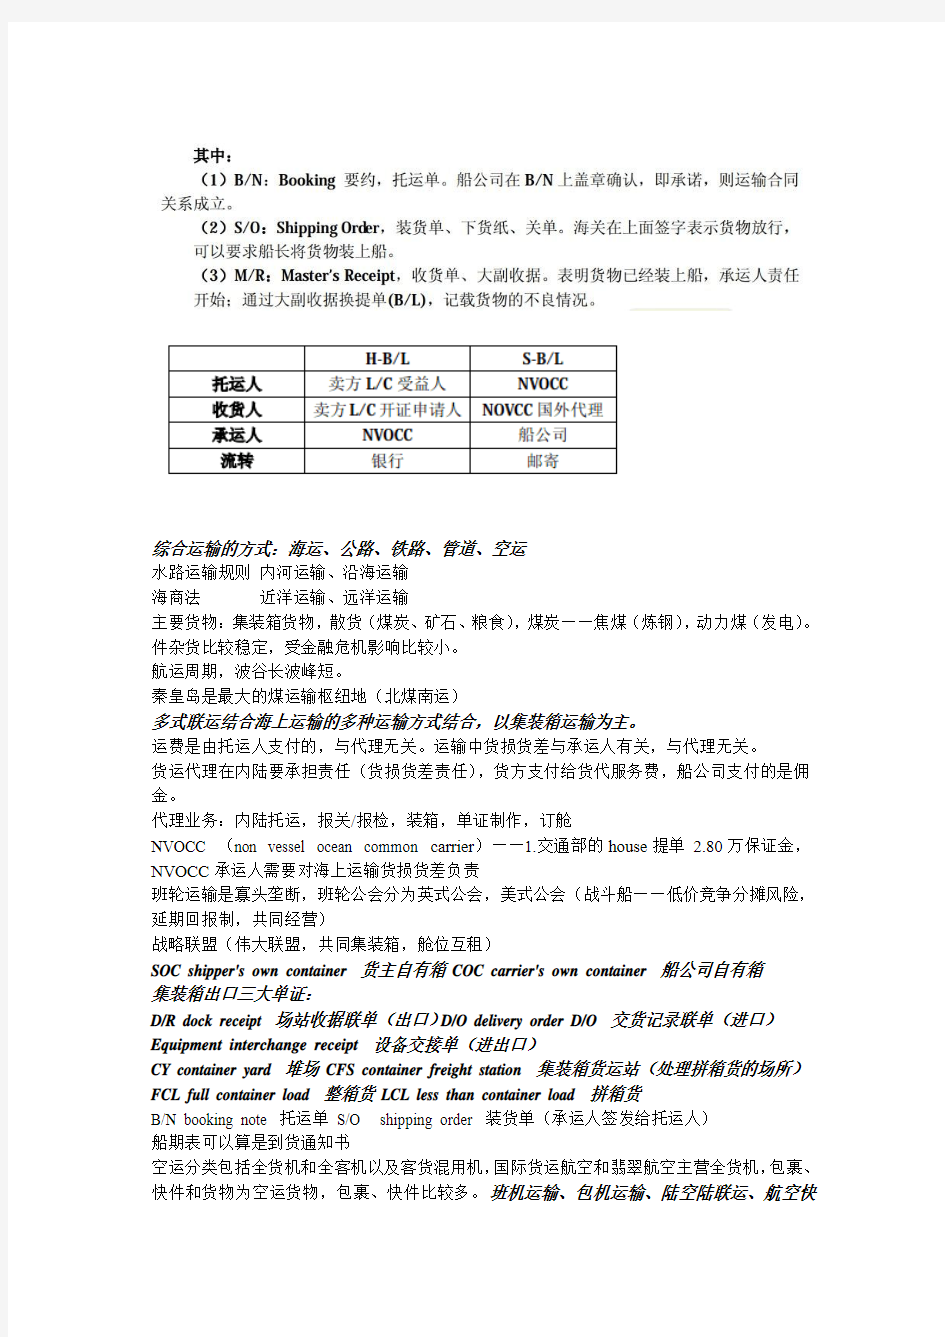 上海海事大学综合运输学期末考试材料